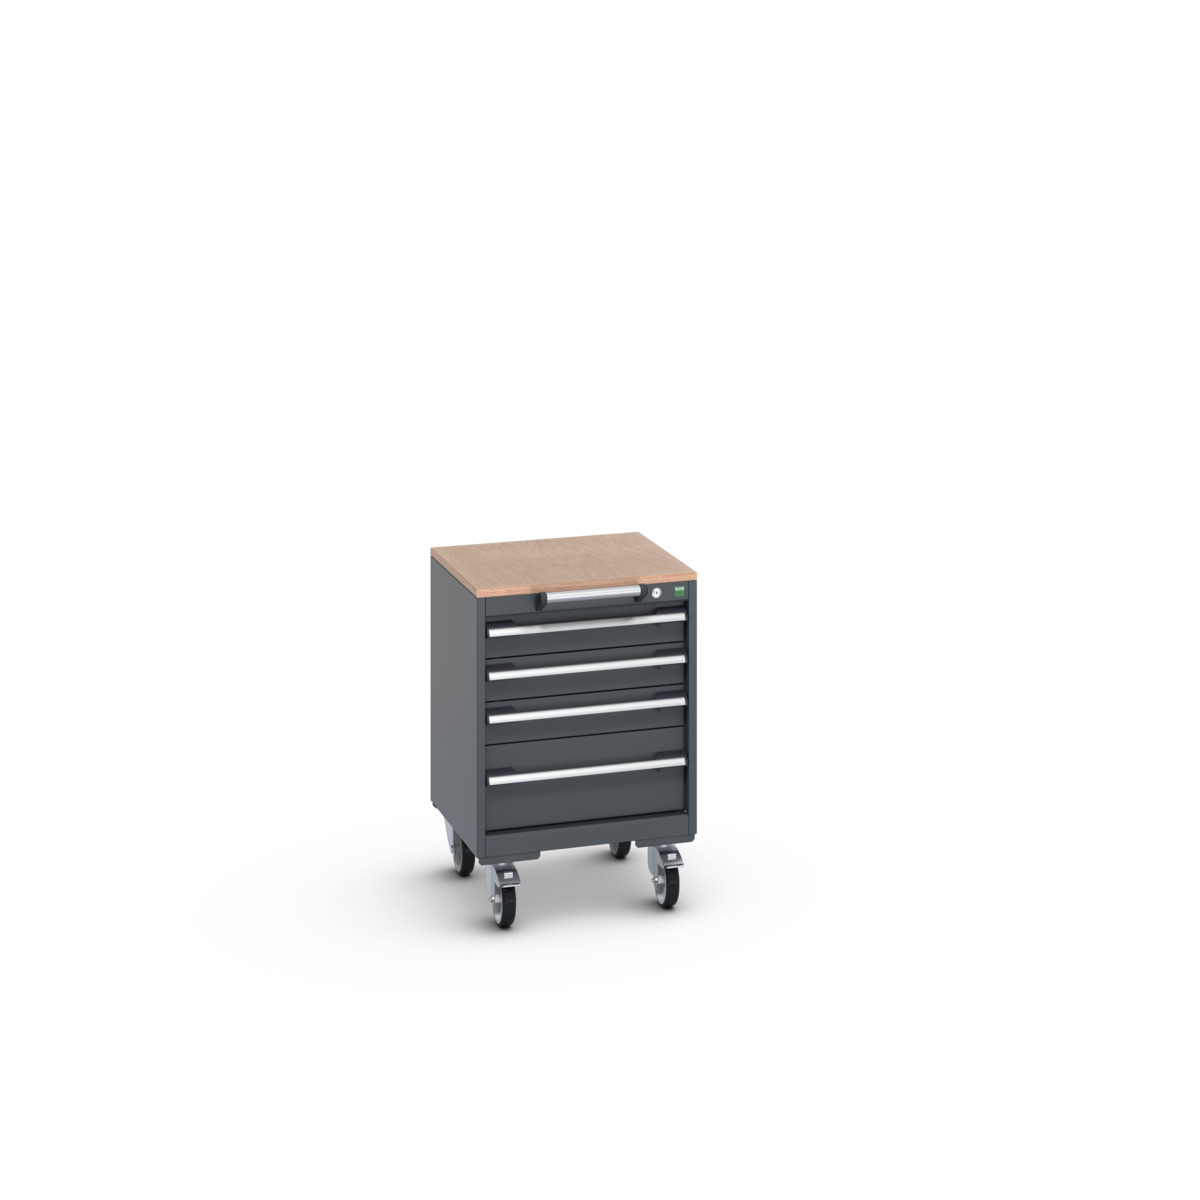 40402133.77V - cubio mobile cabinet